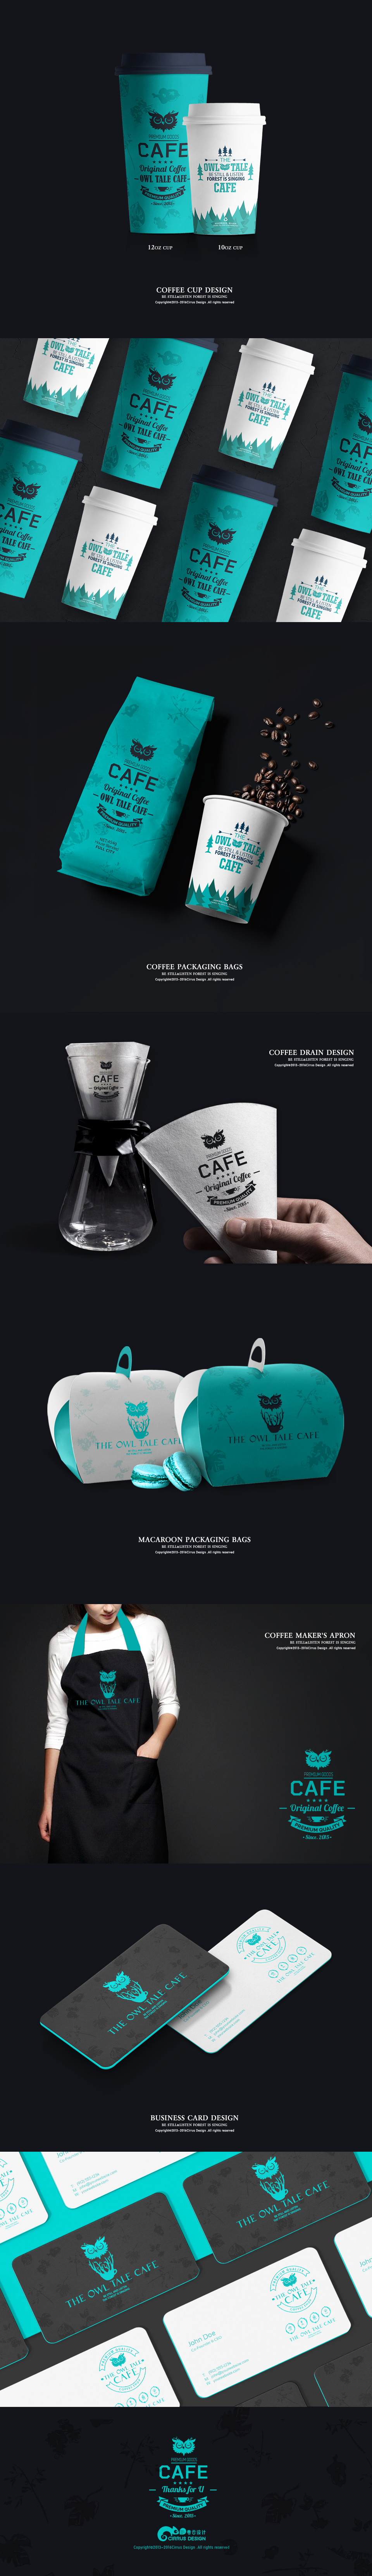 猫头鹰咖啡餐饮品牌VI视觉/卡通形象设计 